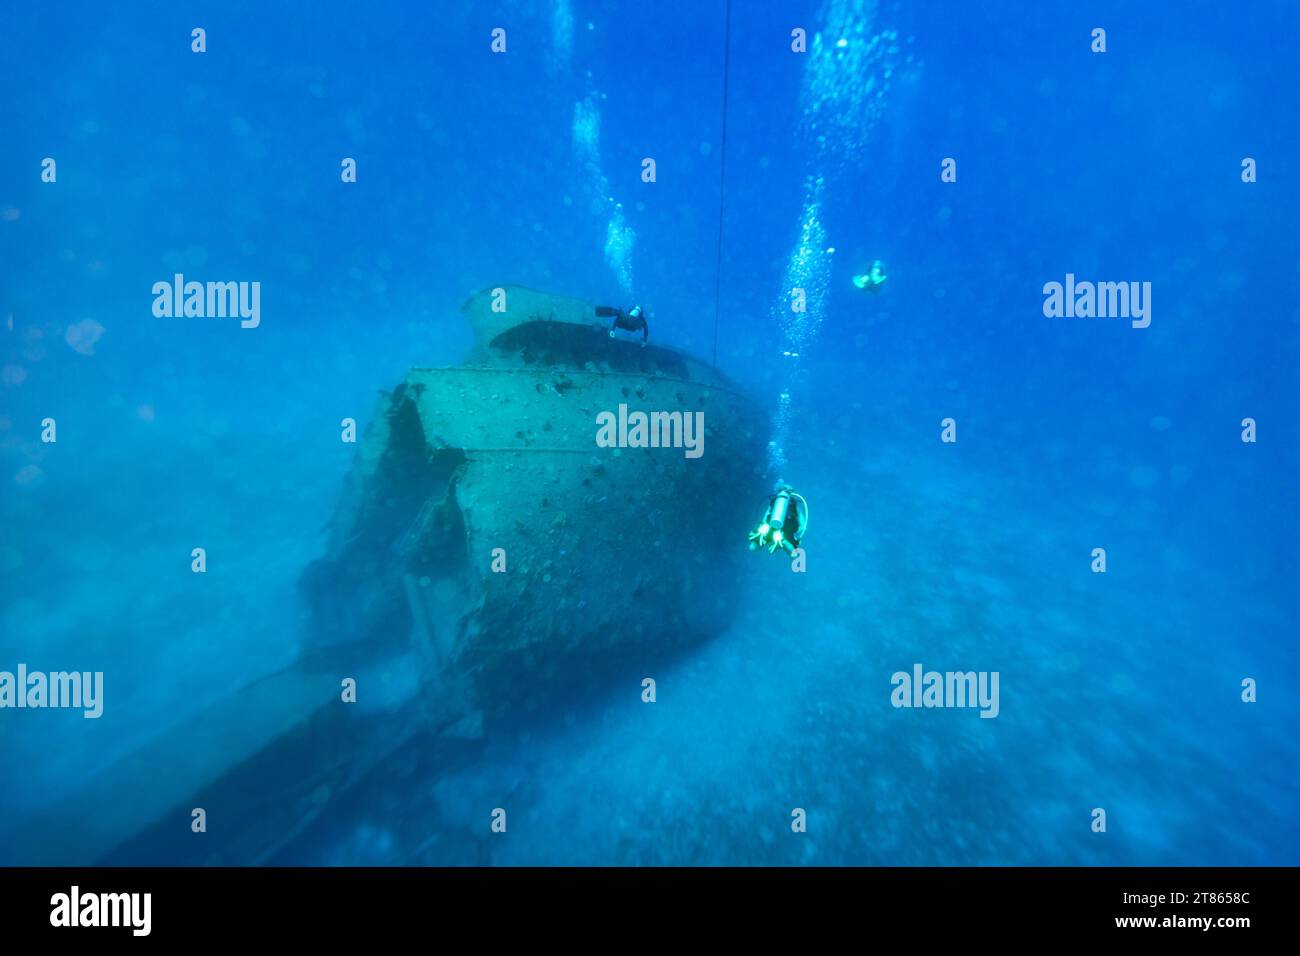 Les plongeurs passent au-dessus de l'épave d'un vieux cargo coulé dans des eaux bleues claires Banque D'Images